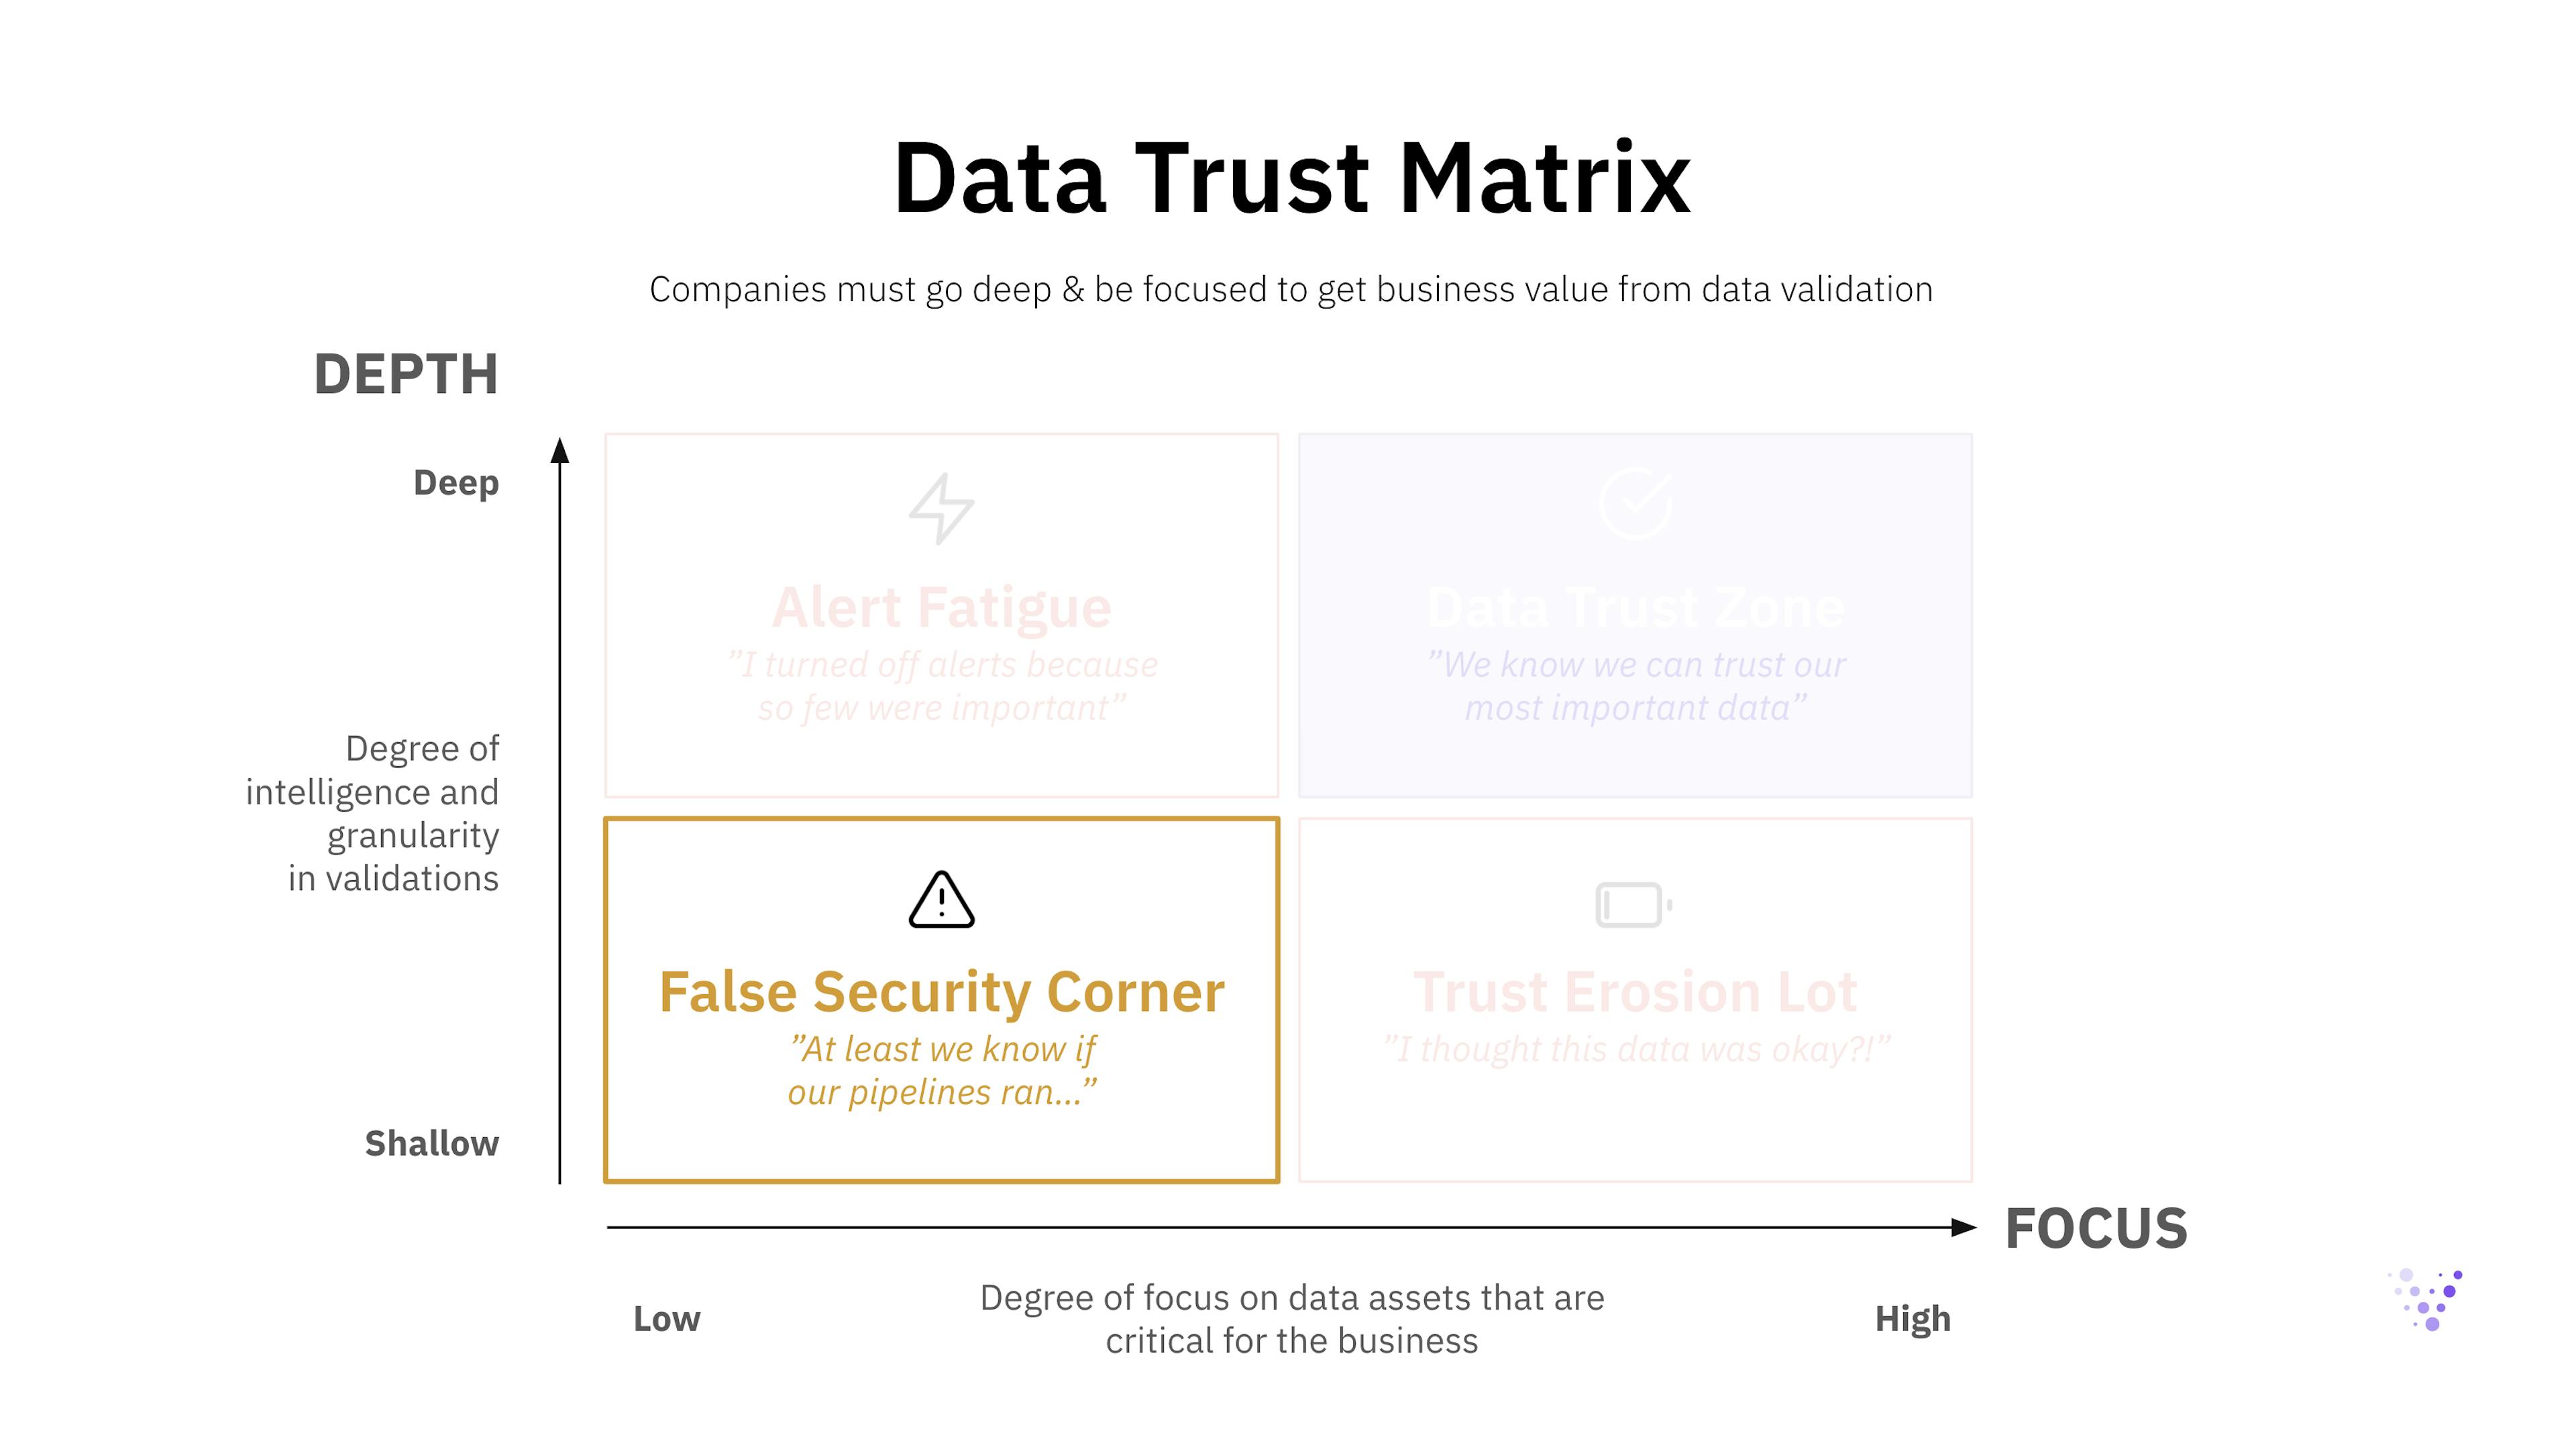 Data Trust Matrix in depth: False Security Corner